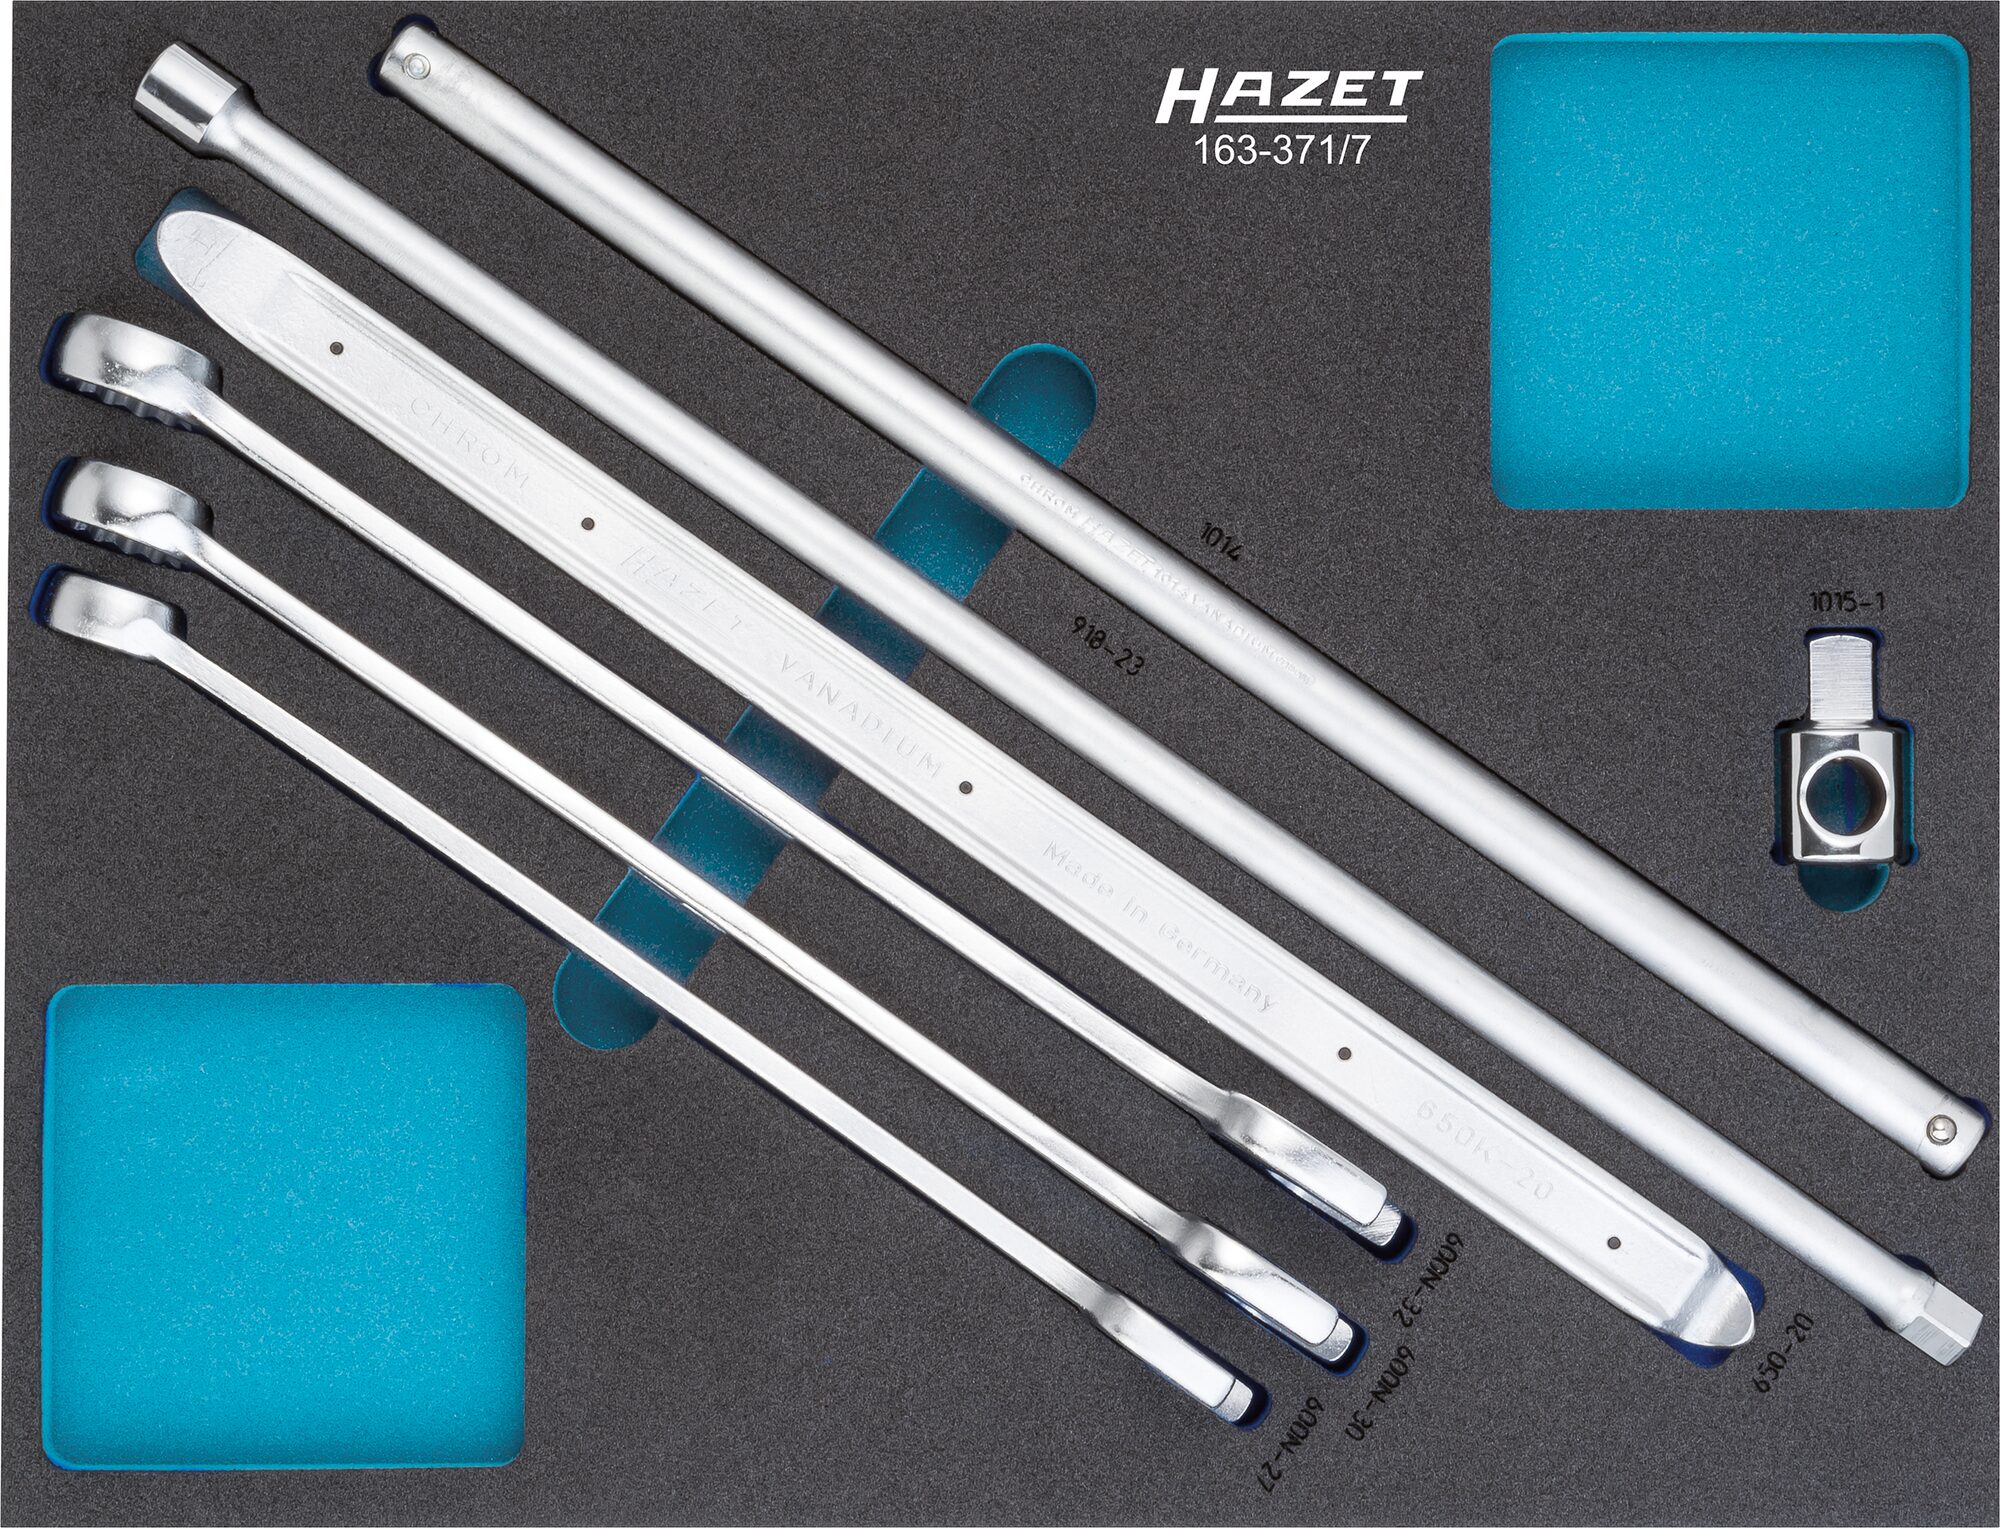 HAZET Werkzeug Satz 163-371/7 · Außen Doppel-Sechskant-Tractionsprofil, Außen Sechskant Profil, Vierkant massiv 12,5 mm (1/2 Zoll), Vierkant massiv 20 mm (3/4 Zoll) · 27 · 30 · 32 · Anzahl Werkzeuge: 7